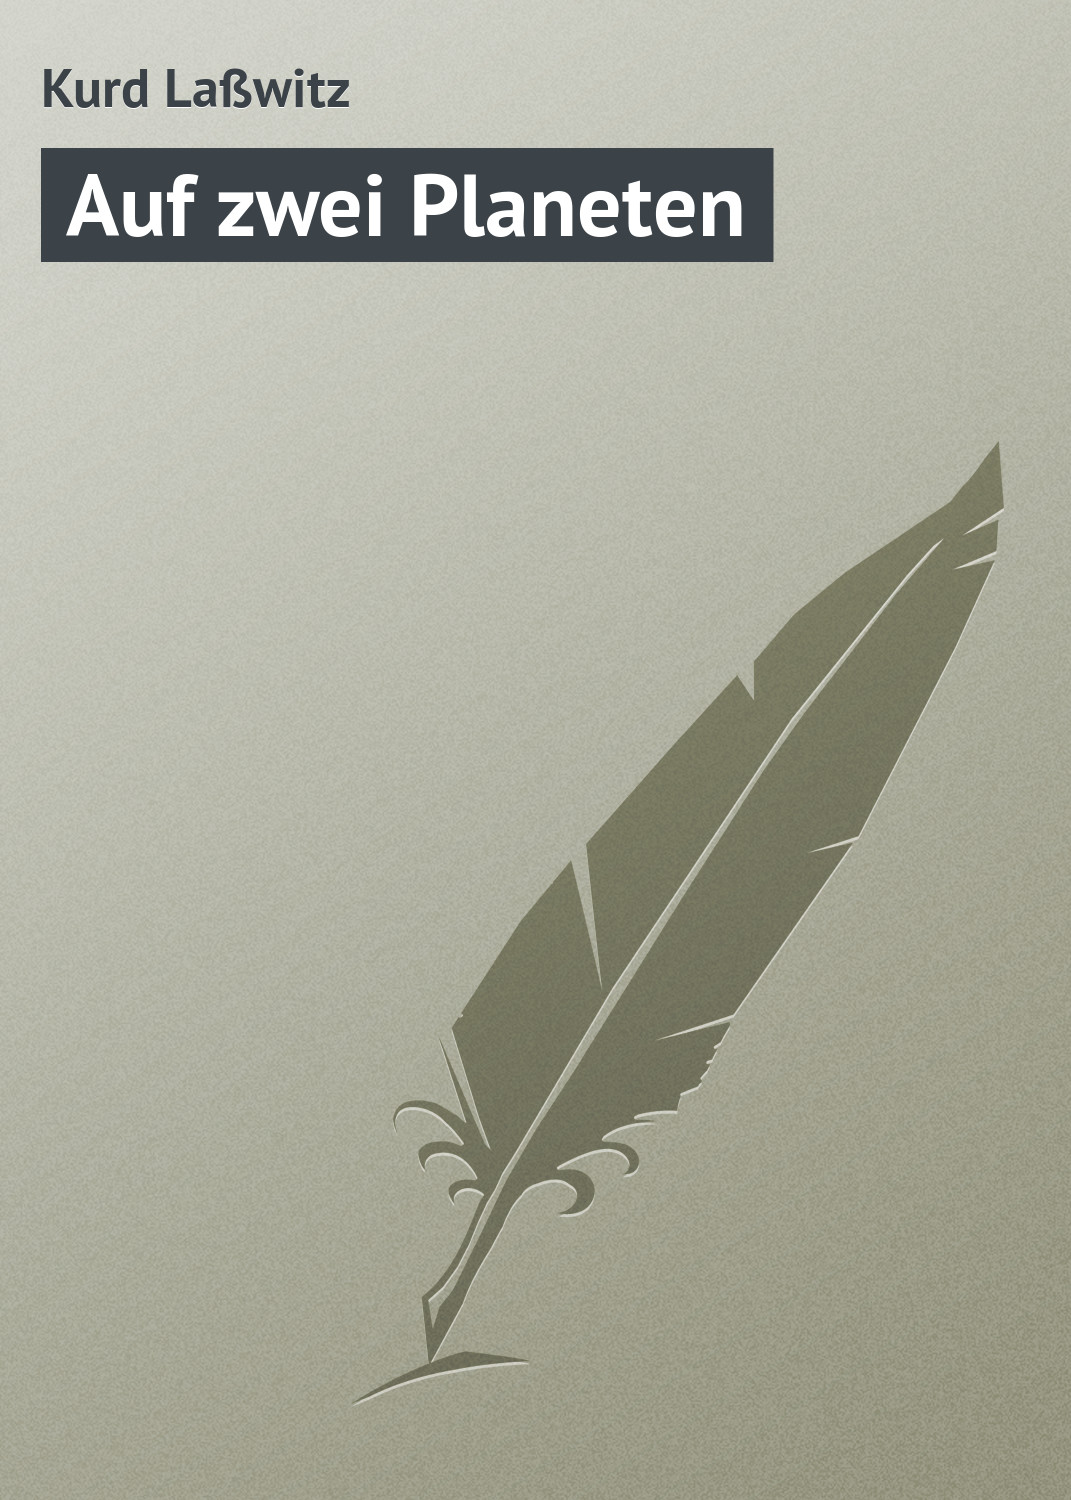 Книга Auf zwei Planeten из серии , созданная Kurd Laßwitz, может относится к жанру Зарубежная старинная литература, Зарубежная классика. Стоимость электронной книги Auf zwei Planeten с идентификатором 21104838 составляет 5.99 руб.